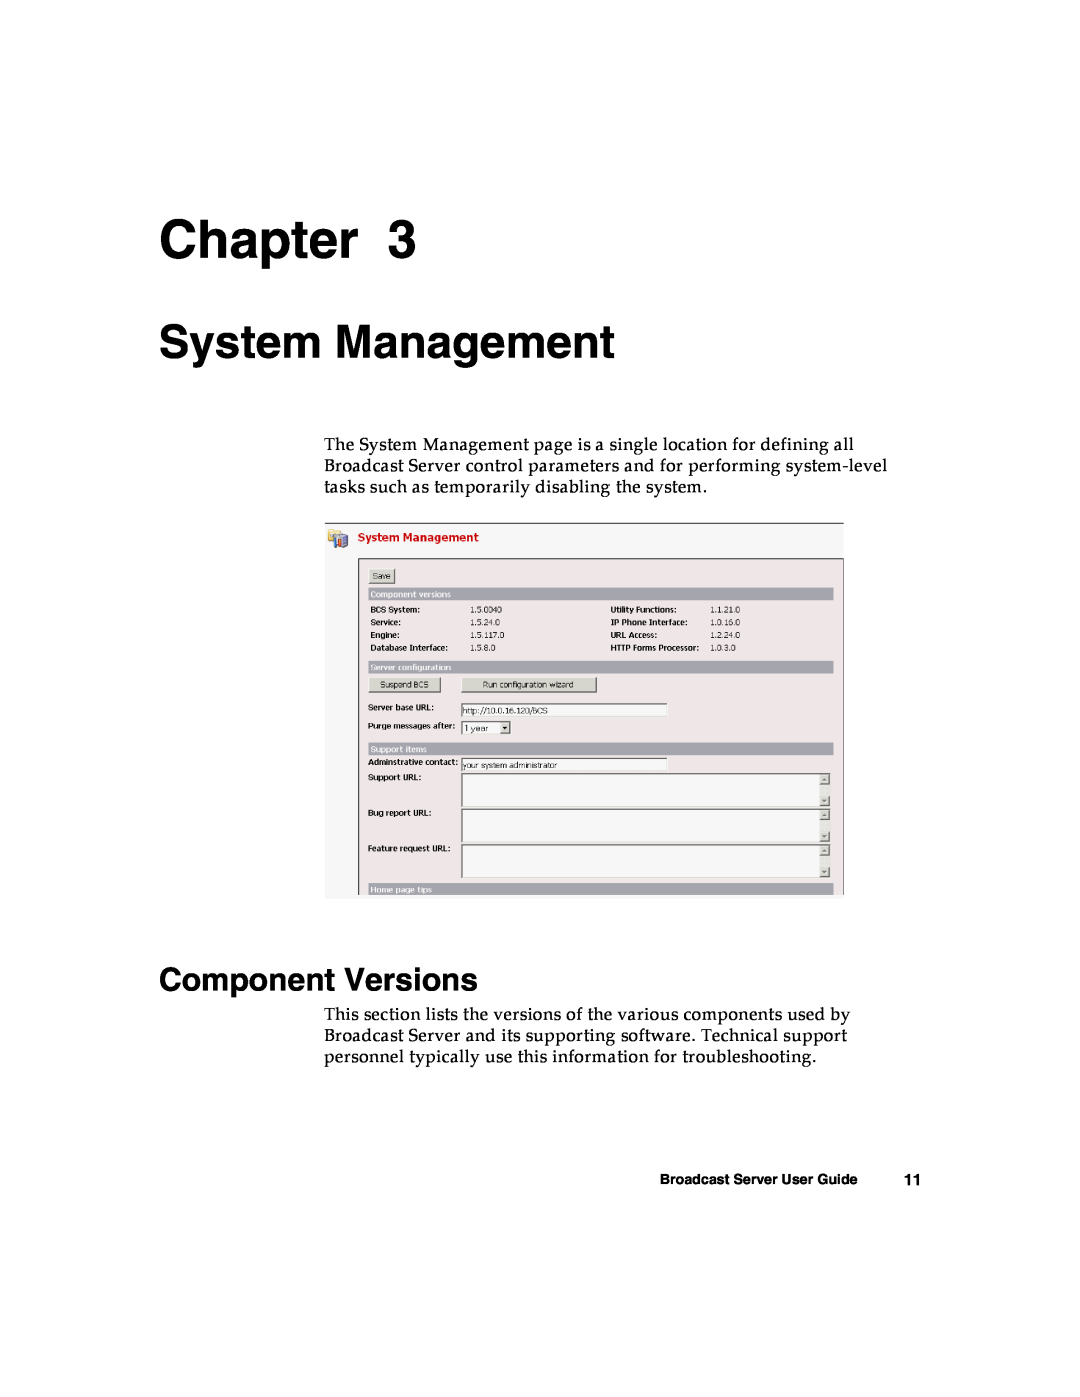 Nortel Networks Broadcast Server warranty System Management, Component Versions, Chapter 